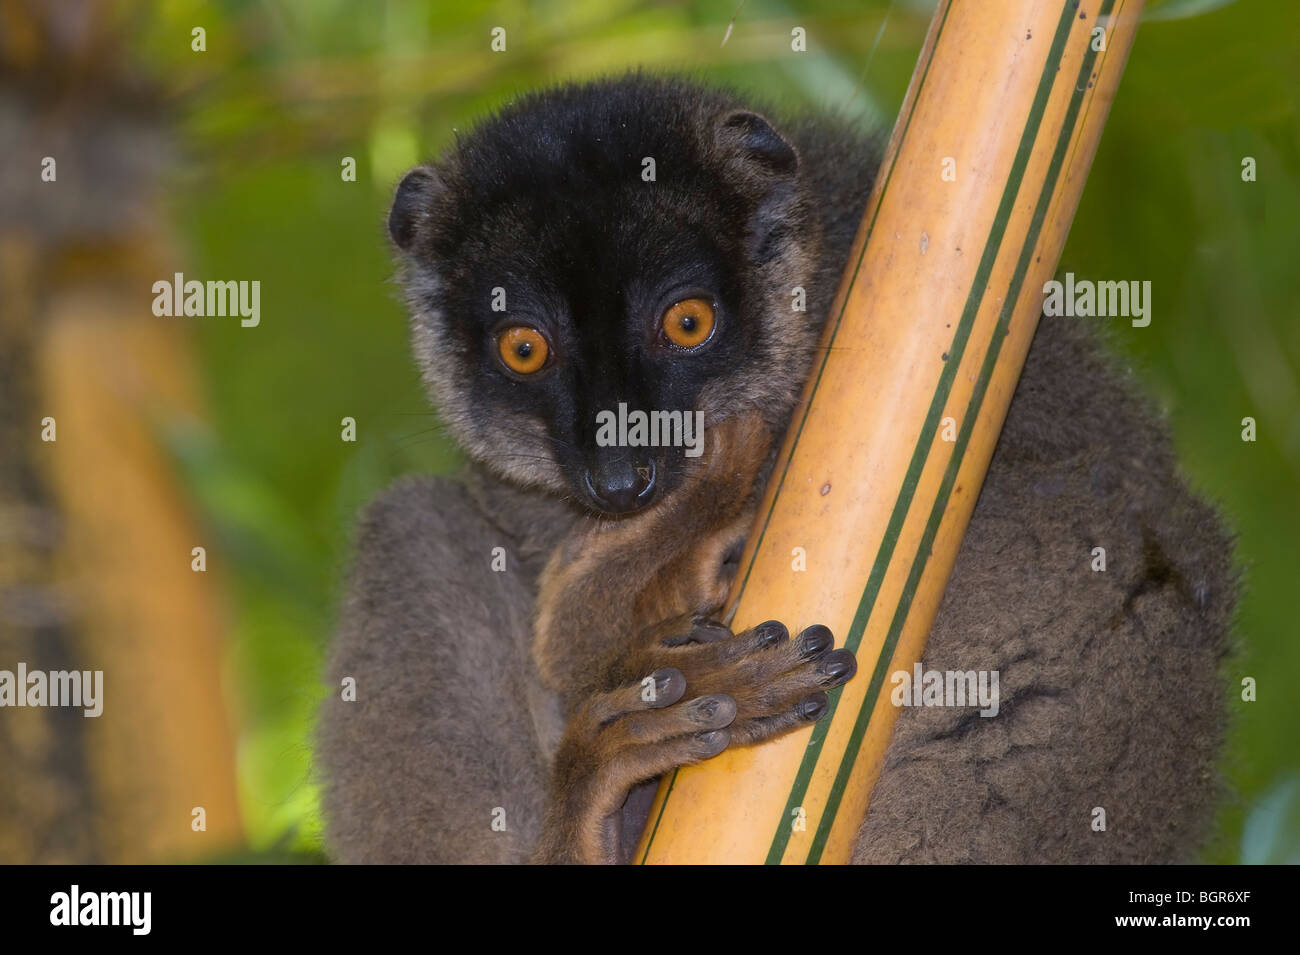 Common Brown Lemur (Eulemur fulvus), Madagascar Stock Photo